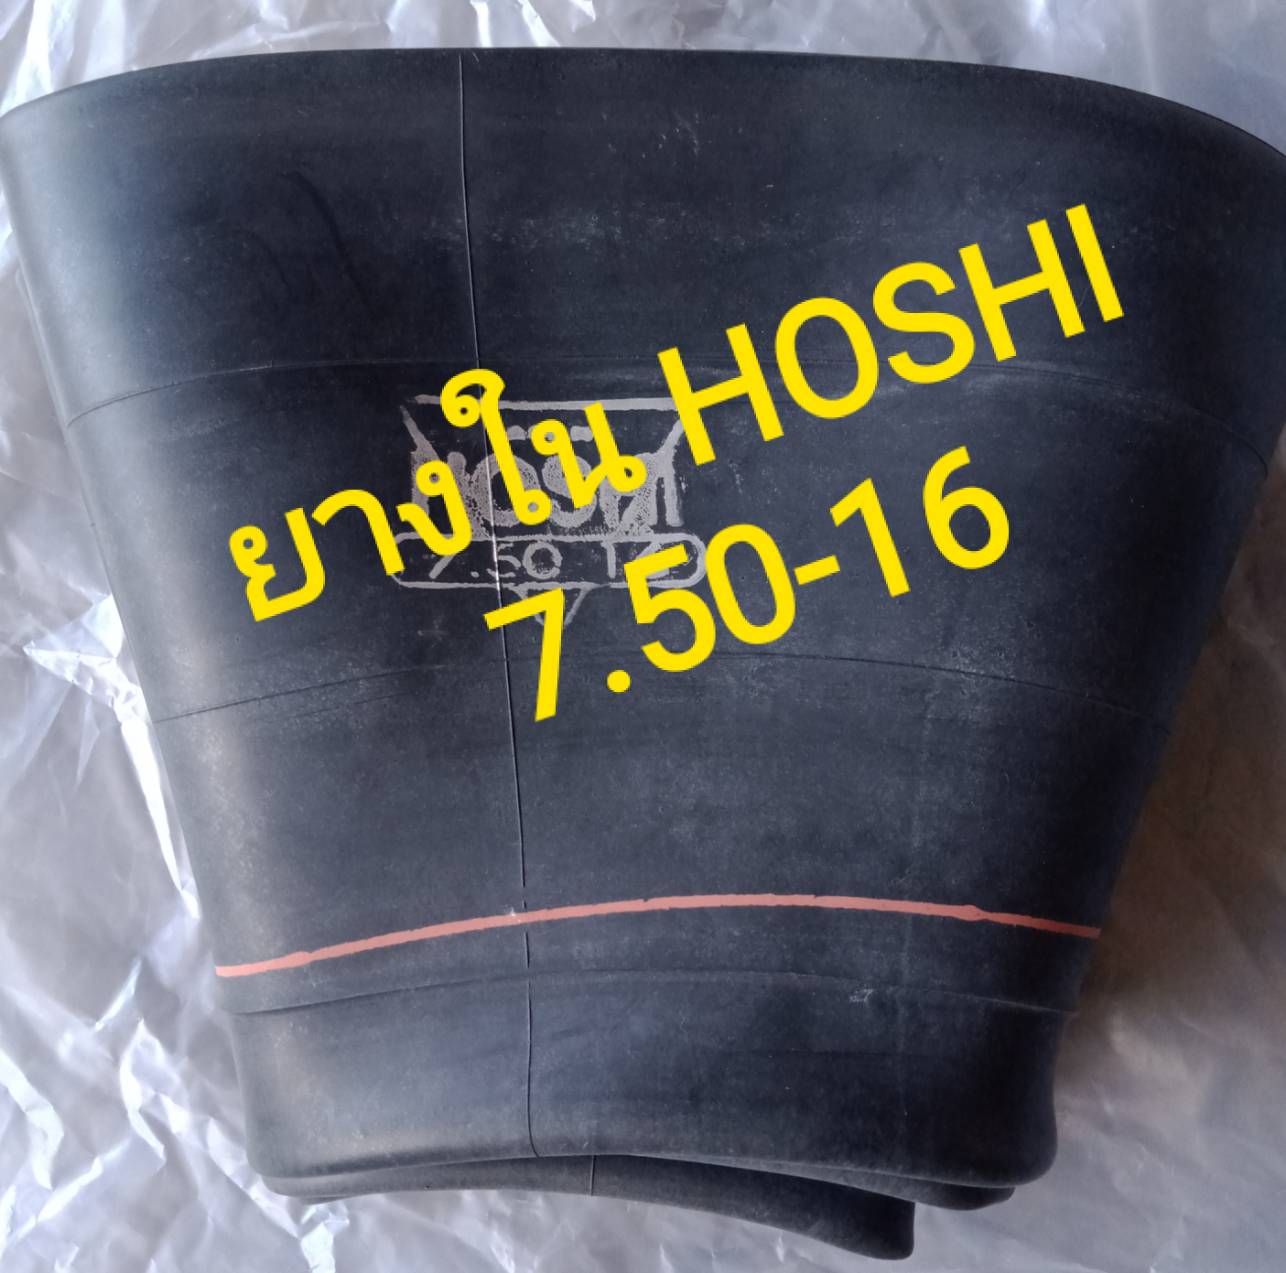 ยางใน รถไถ รถยนต์ 7.50 -16 (ขอบ16) รุ่นHoshi (จุ๊บสั้นอ้วน) เกรดดี (มีบริการเก็บเงินปลายทางค่ะ)